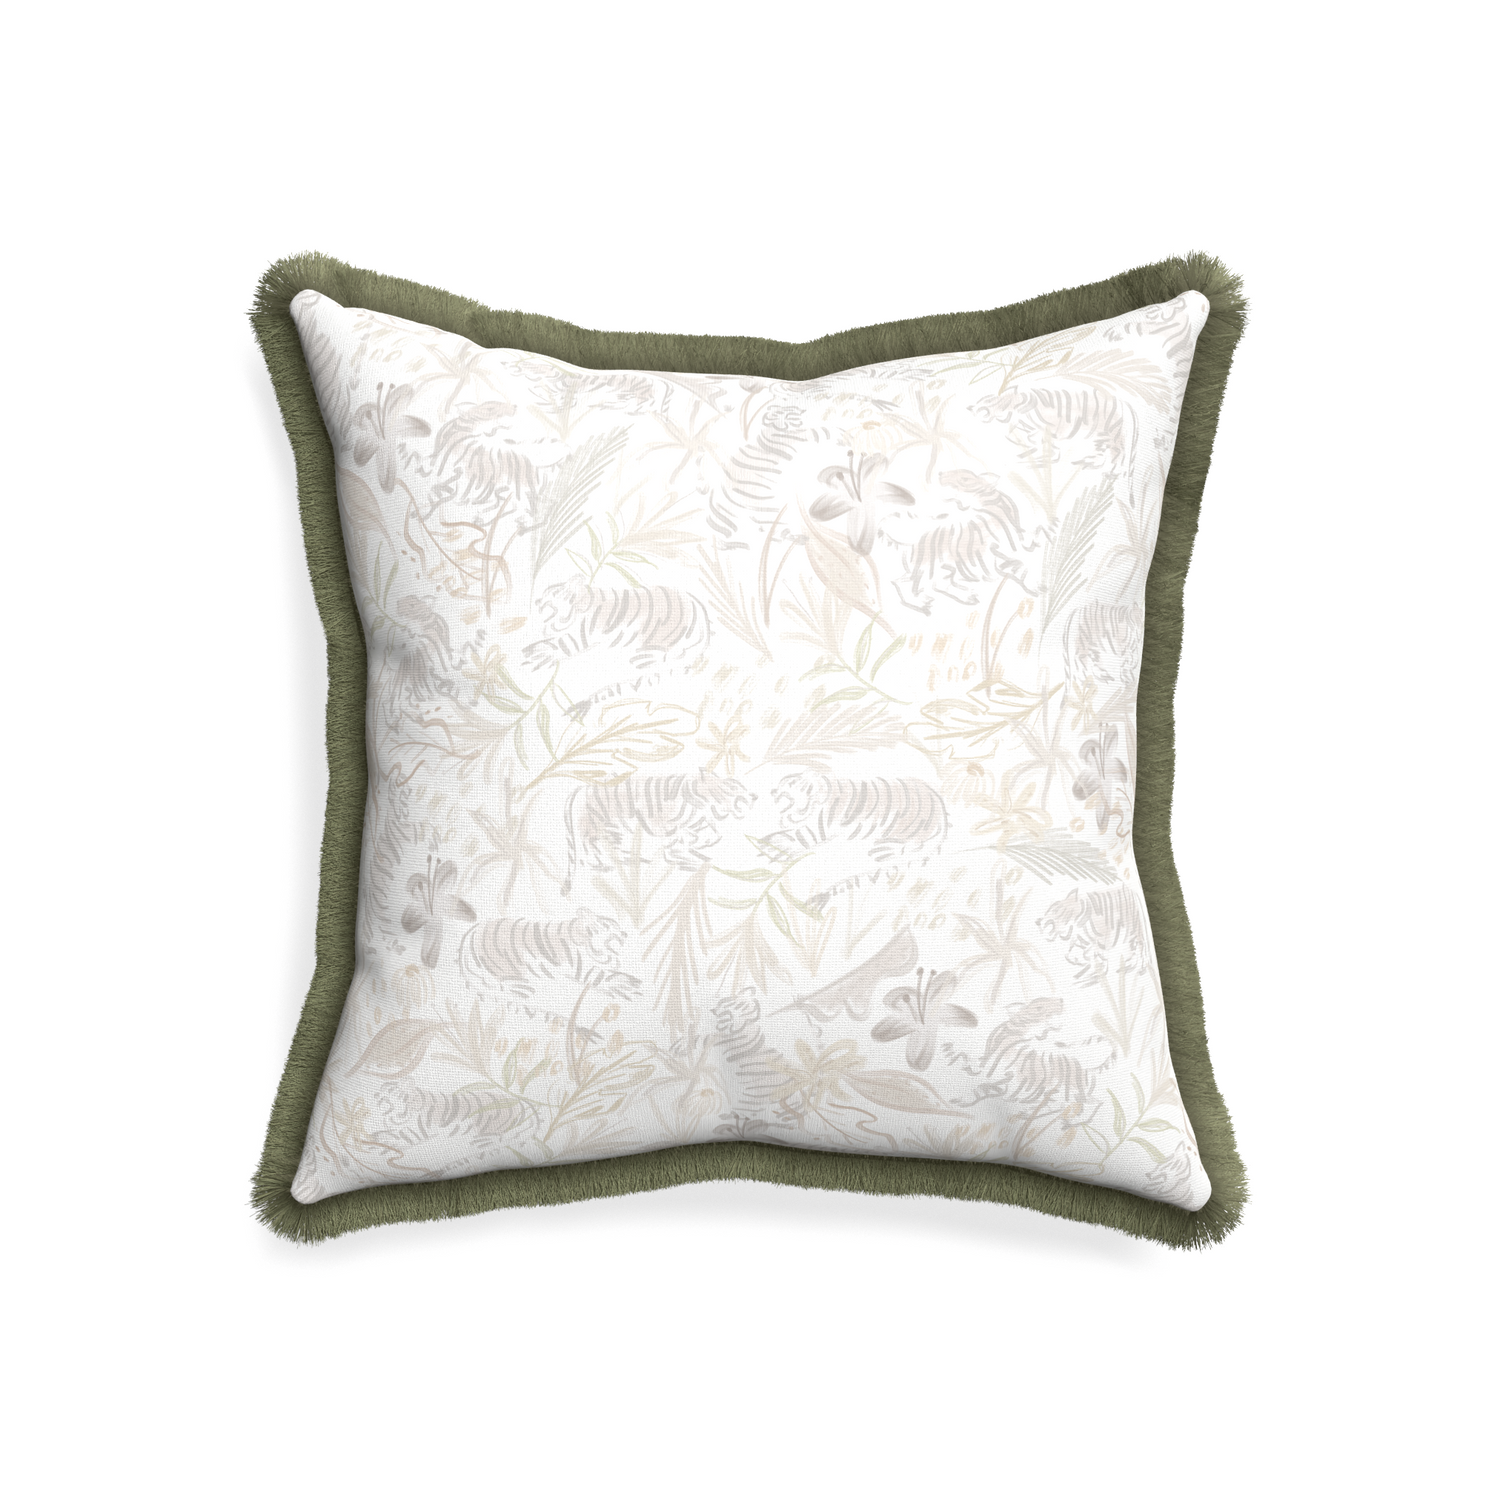 20-square frida sand custom pillow with sage fringe on white background